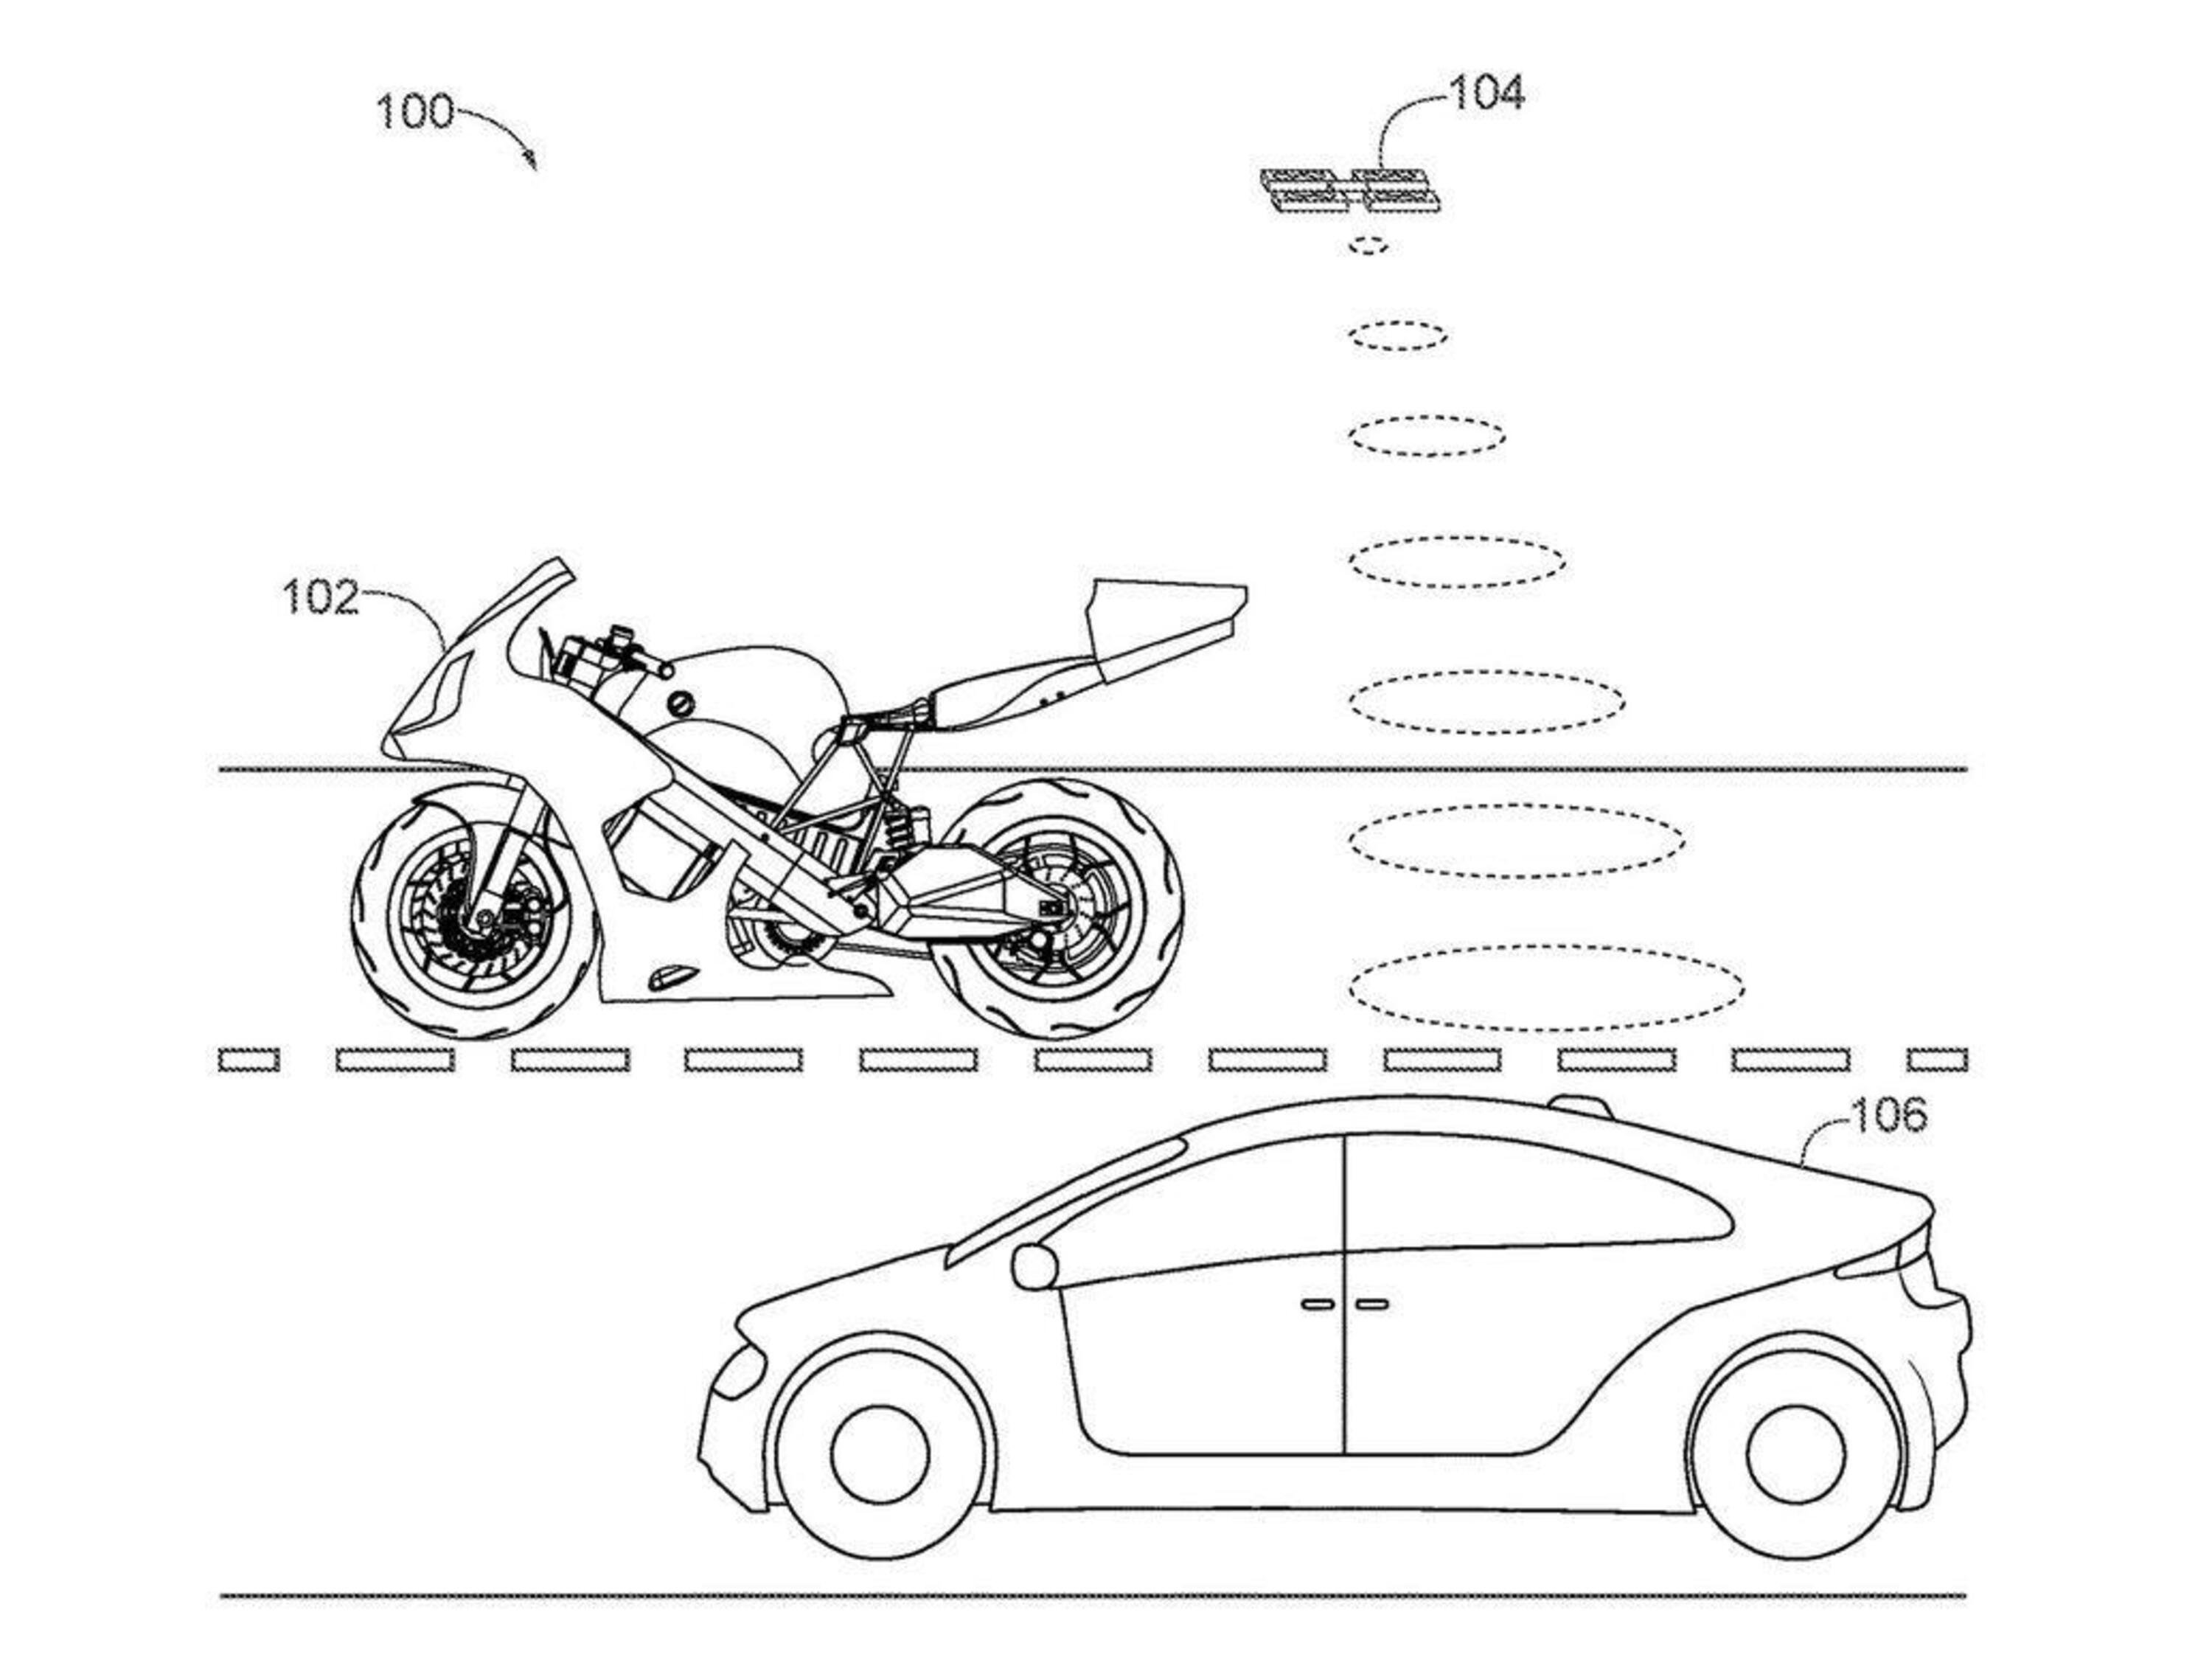 Honda brevetta la moto con il drone integrato